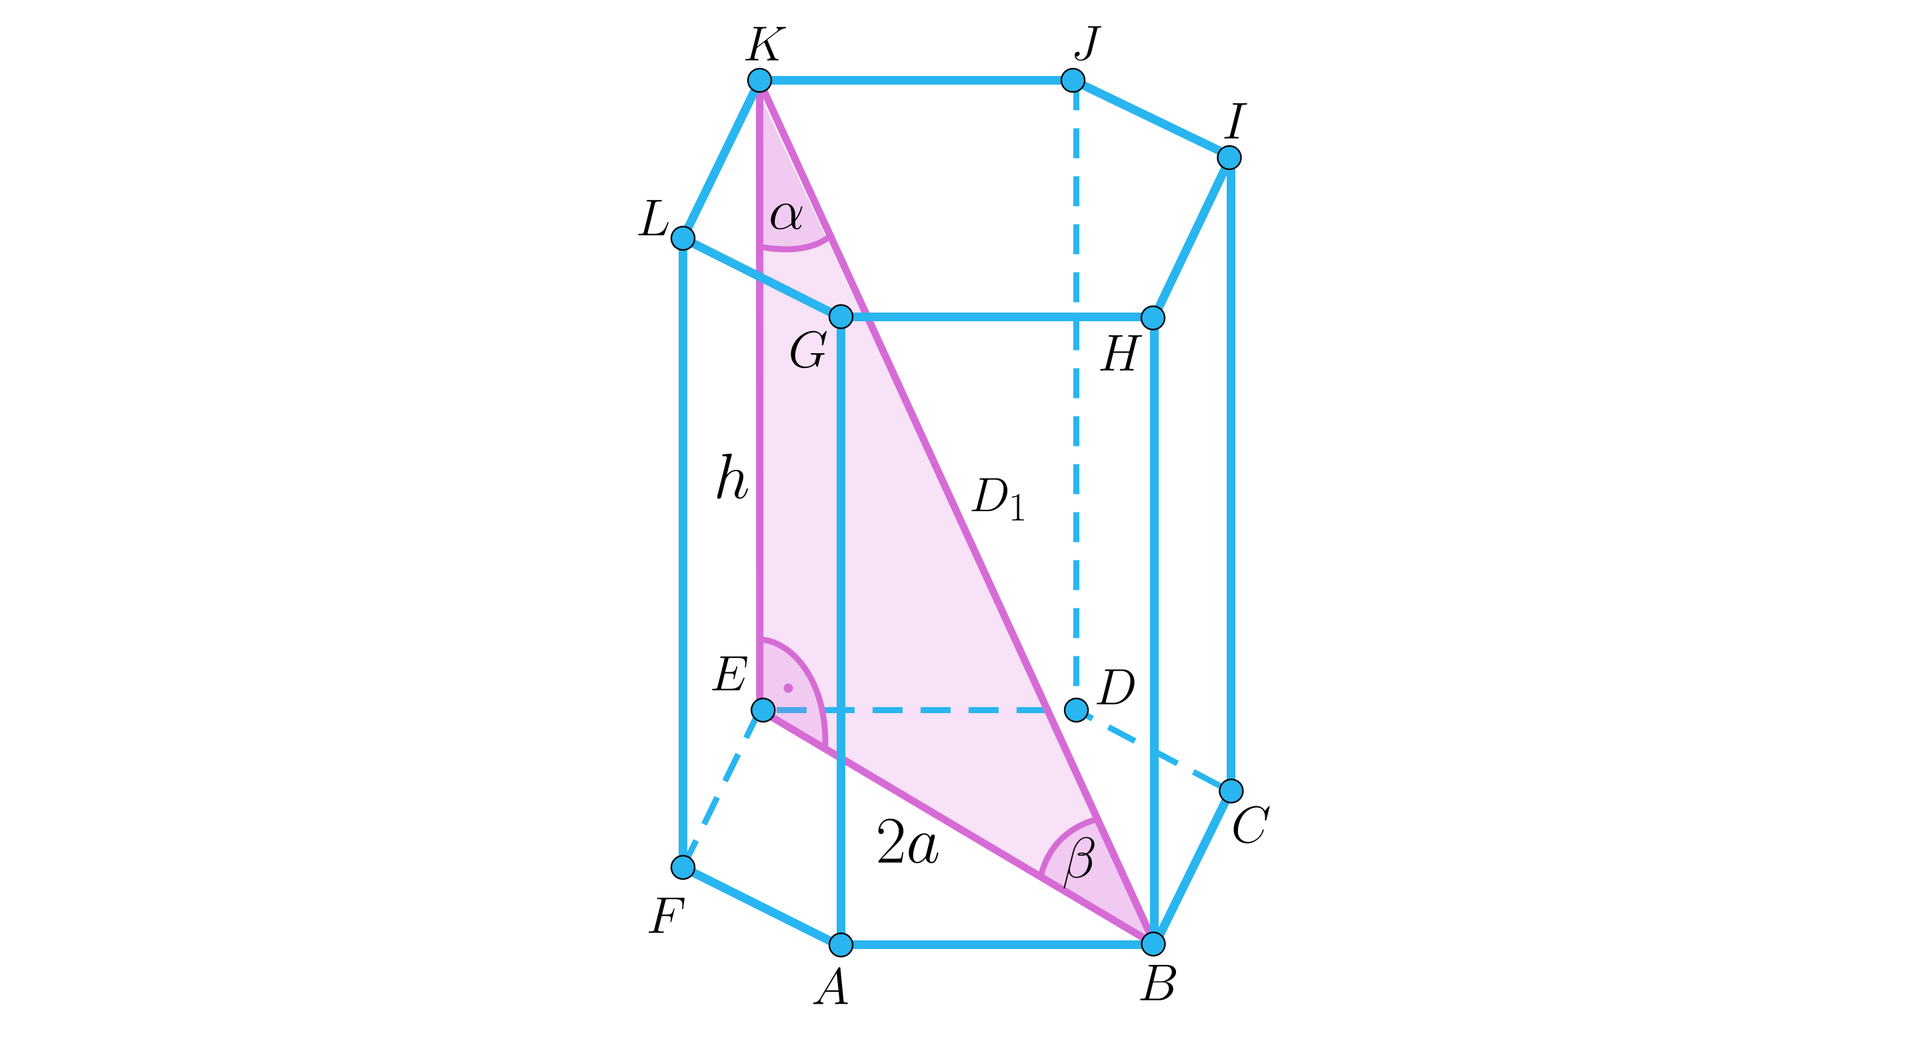 Na ilustracji przedstawiono graniastosłup prawidłowy sześciokątny o podstawie dolnej ABCDEF, oraz górnej kolejno GHIJKL, i wysokości h. Zaznaczono przekątną bryły K B oznaczoną wielka litera D indeks dolny jeden koniec indeksu, oraz dłuższą przekątną dolnej podstawy E B równą 2 a. Zaznaczono trójkąt prostokątny BEK, o przyprostokątnych h, czyli E K oraz 2 a, czyli E B, oraz przeciwprostokątnej, wielka litera D indeks dolny jeden koniec indeksu, czyli K B. Przy wierzchołku K zaznaczono kąt α, przy wierzchołku B zaznaczono kąt β, natomiast kąt przy wierzchołku E jest kątem prostym. 